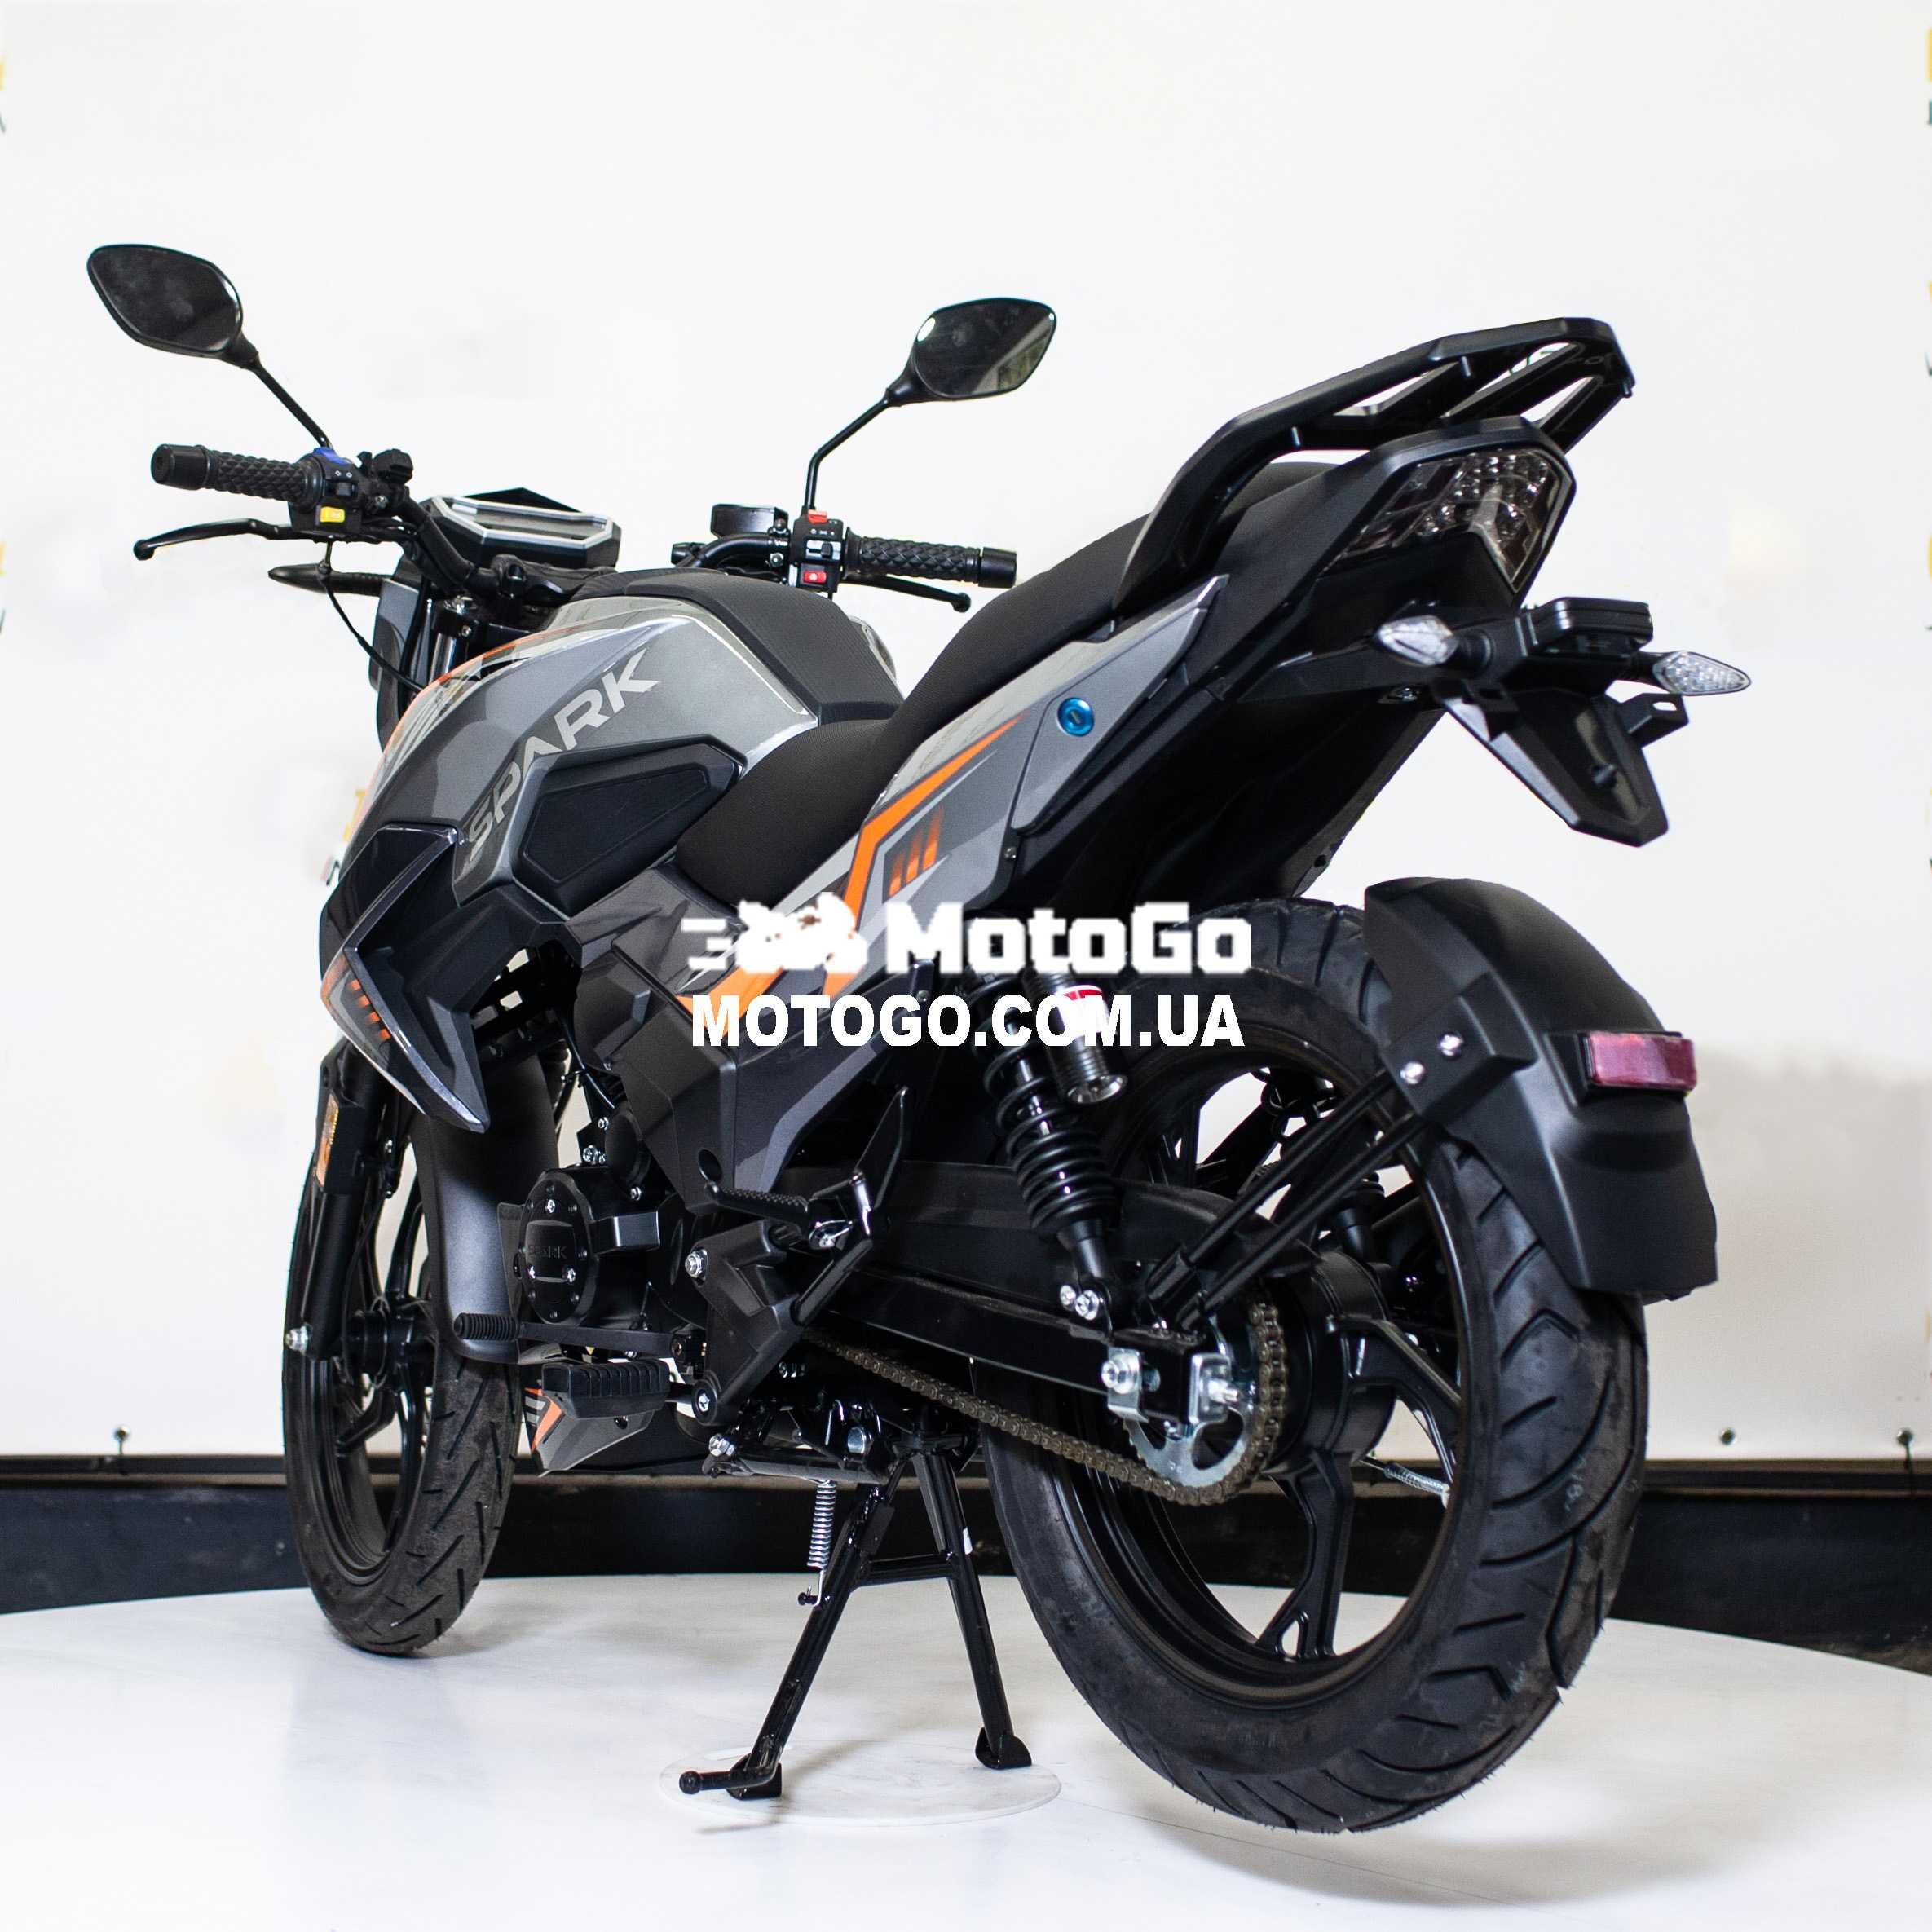 Новый Мотоцикл Spark SP200R-32. Гарантия, Кредит - Мотосалон MotoGo!!